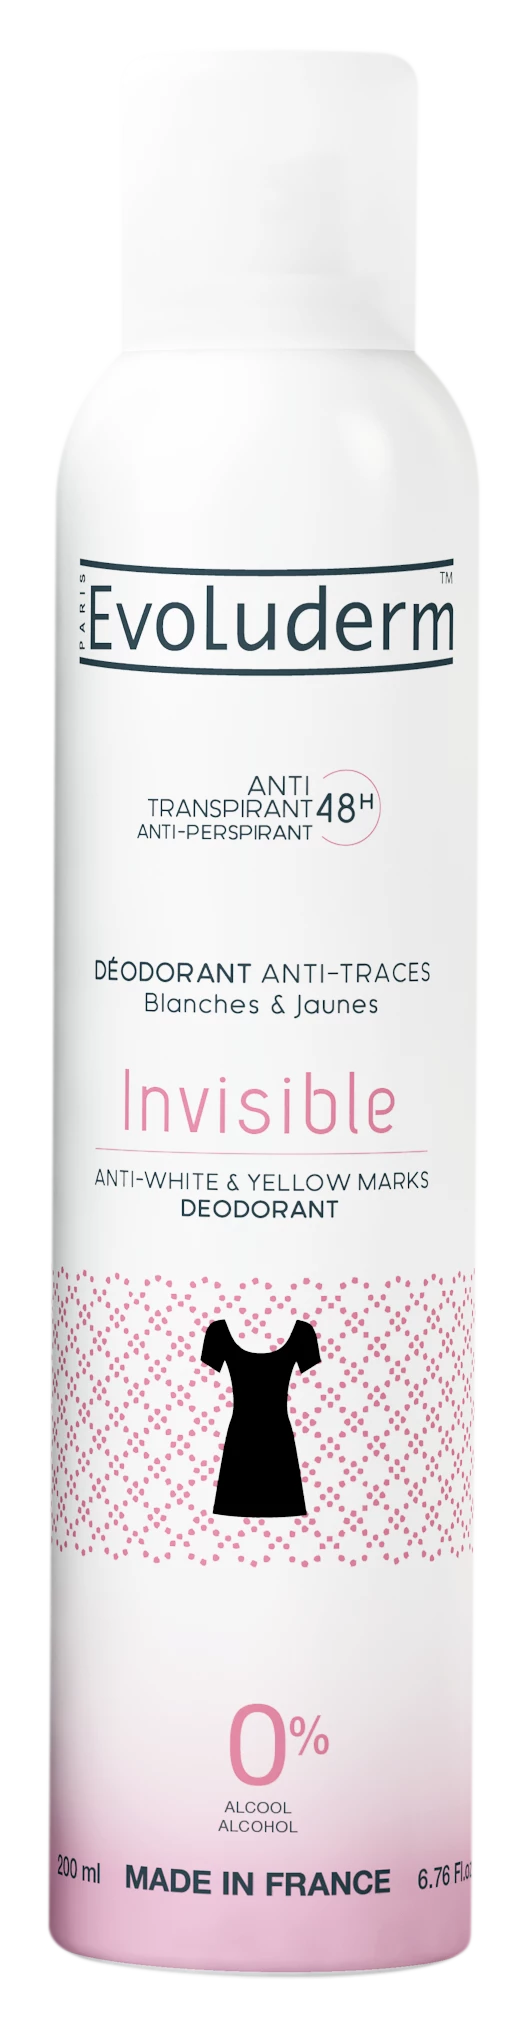 Onzichtbare deodorant tegen witte en gele vlekken, 200 ml - EVOLUDERM